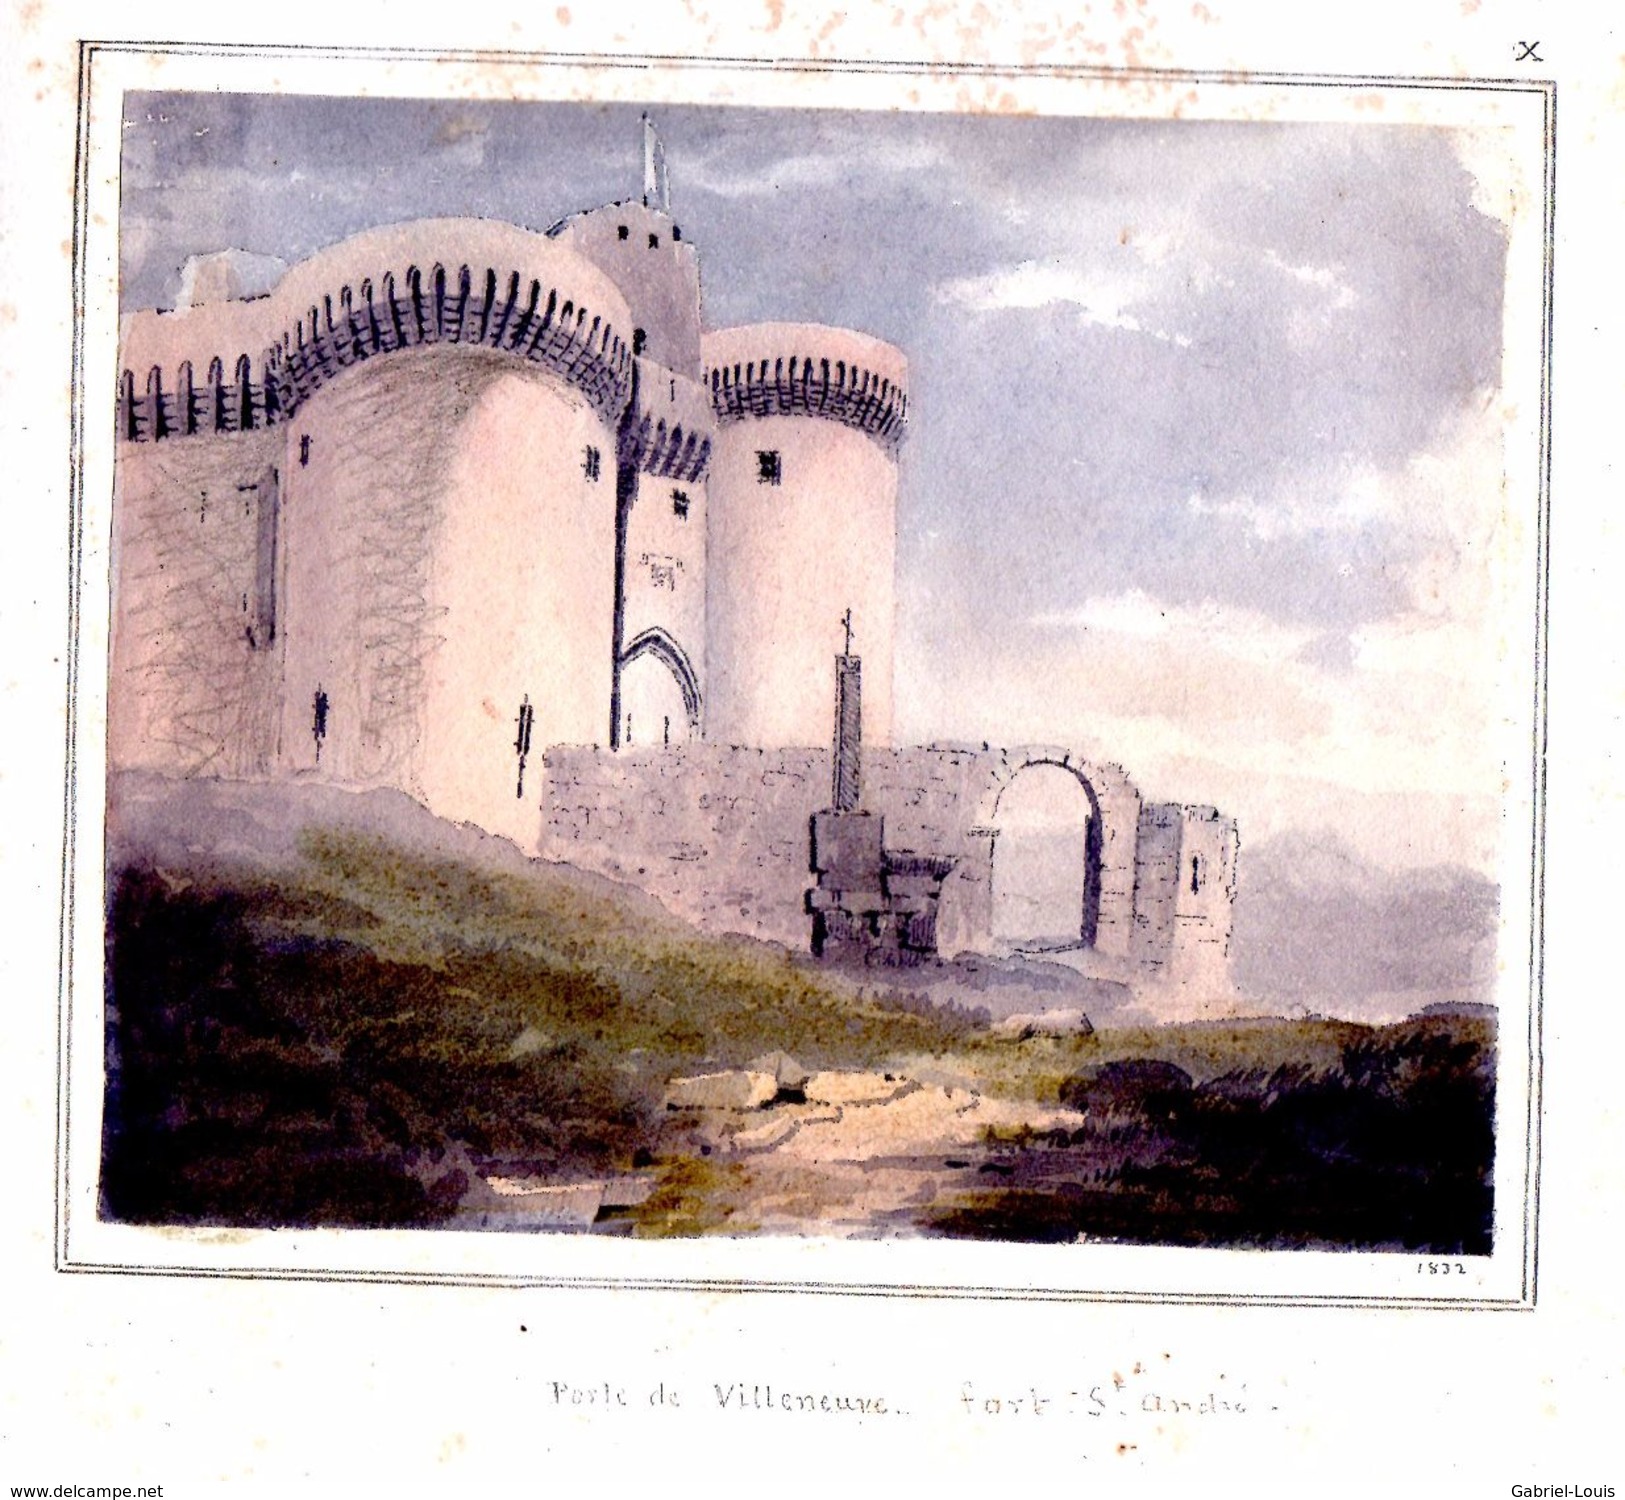 Carnet de croquis 1831 -1835 - Emilien Frossard - Région Avignon et Clermont-Ferrand - 25 dessins et aquarelles